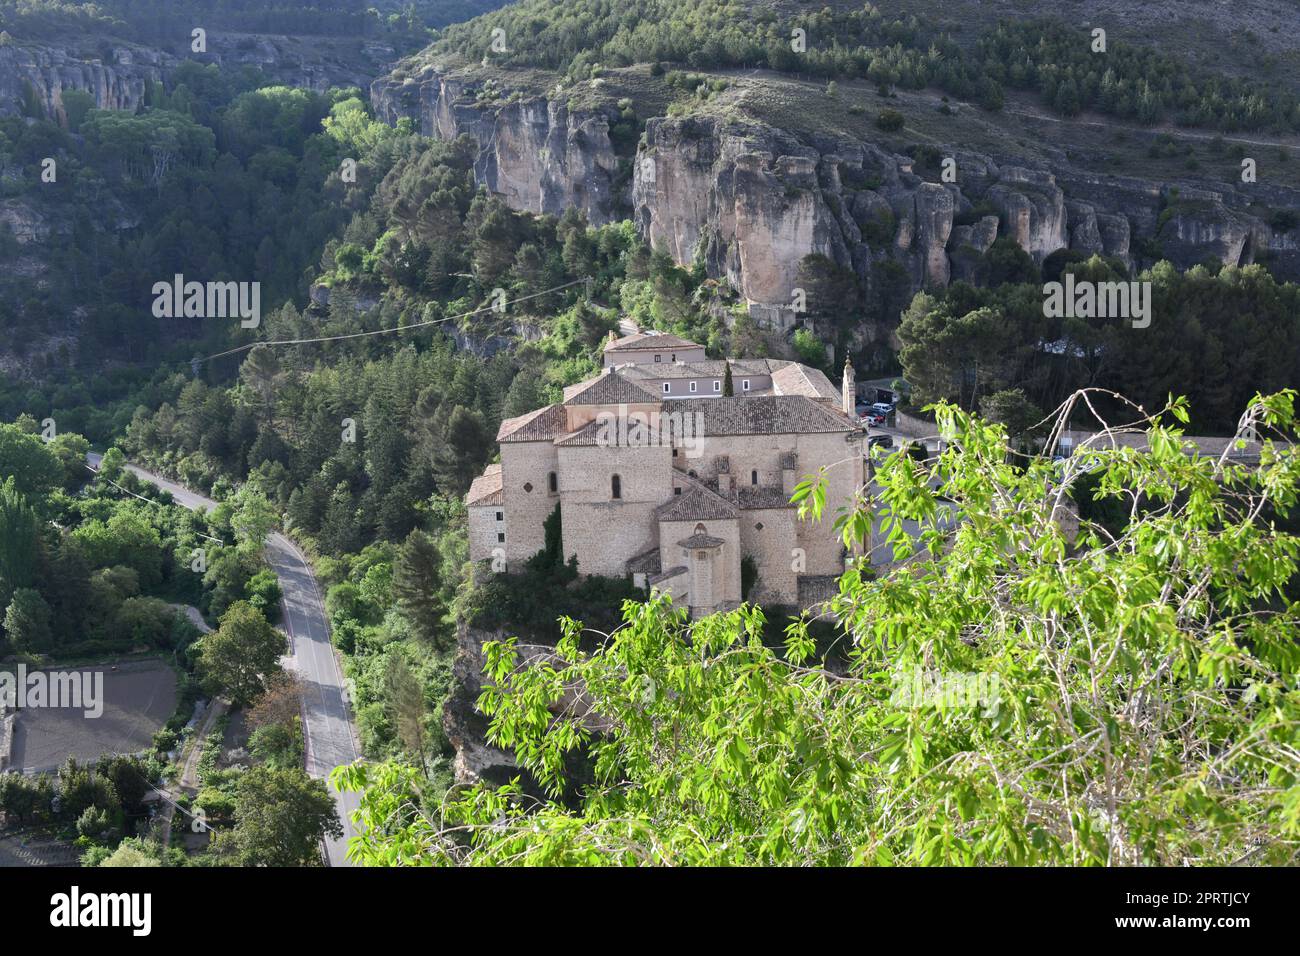 Façades de maisons, Cityscapes de Cuenca, capitale provinciale de Cuenca, Espagne, 12 mai 2022 Banque D'Images